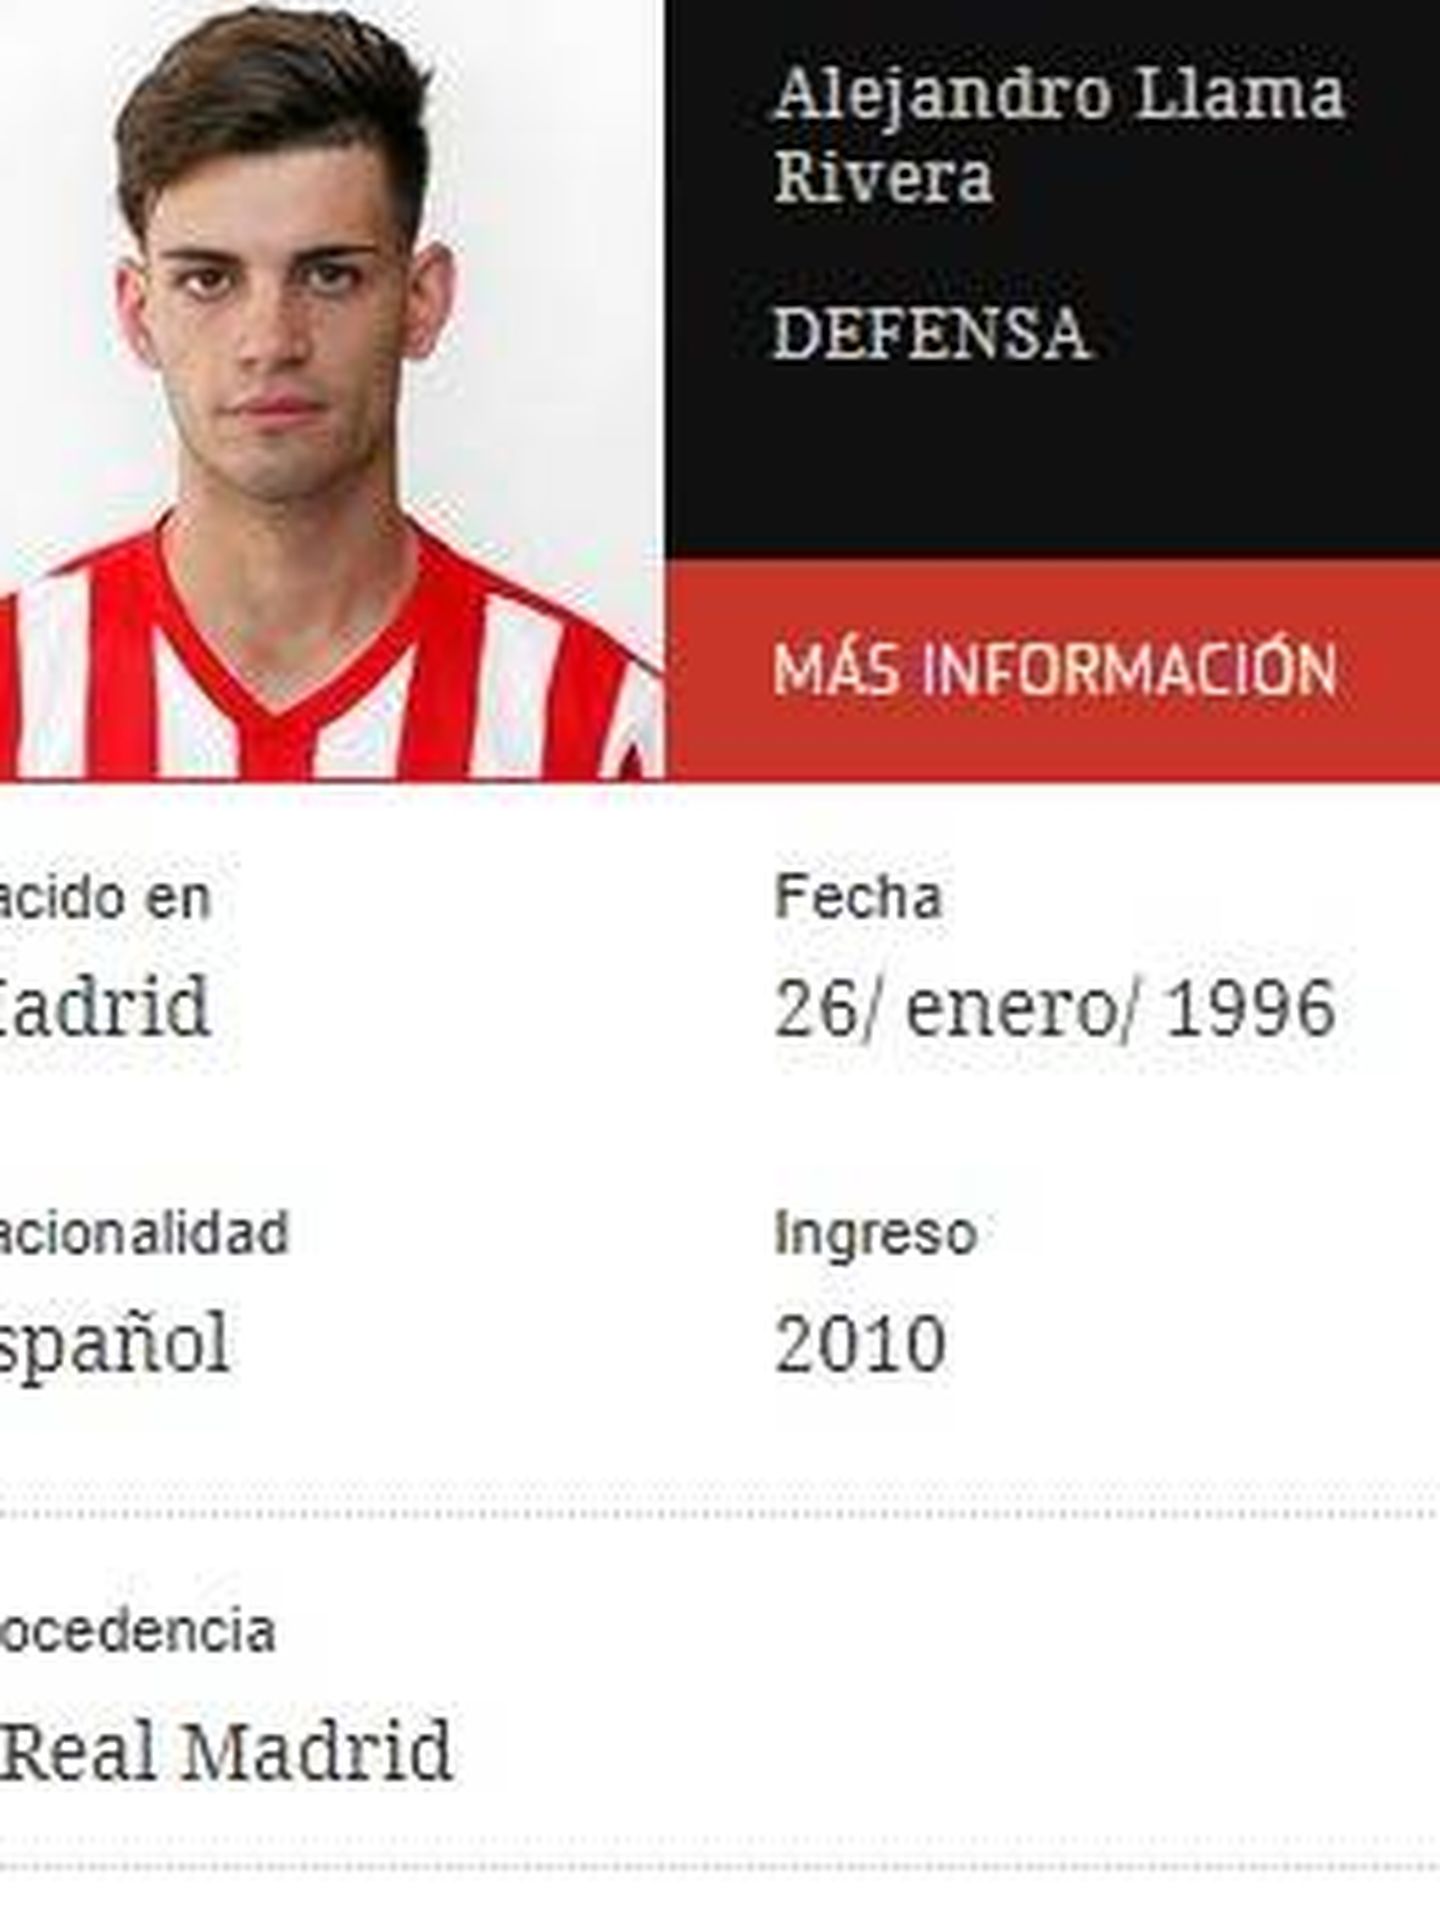 Ficha de Alejandro cuando era jugador del Atlético de Madrid. 